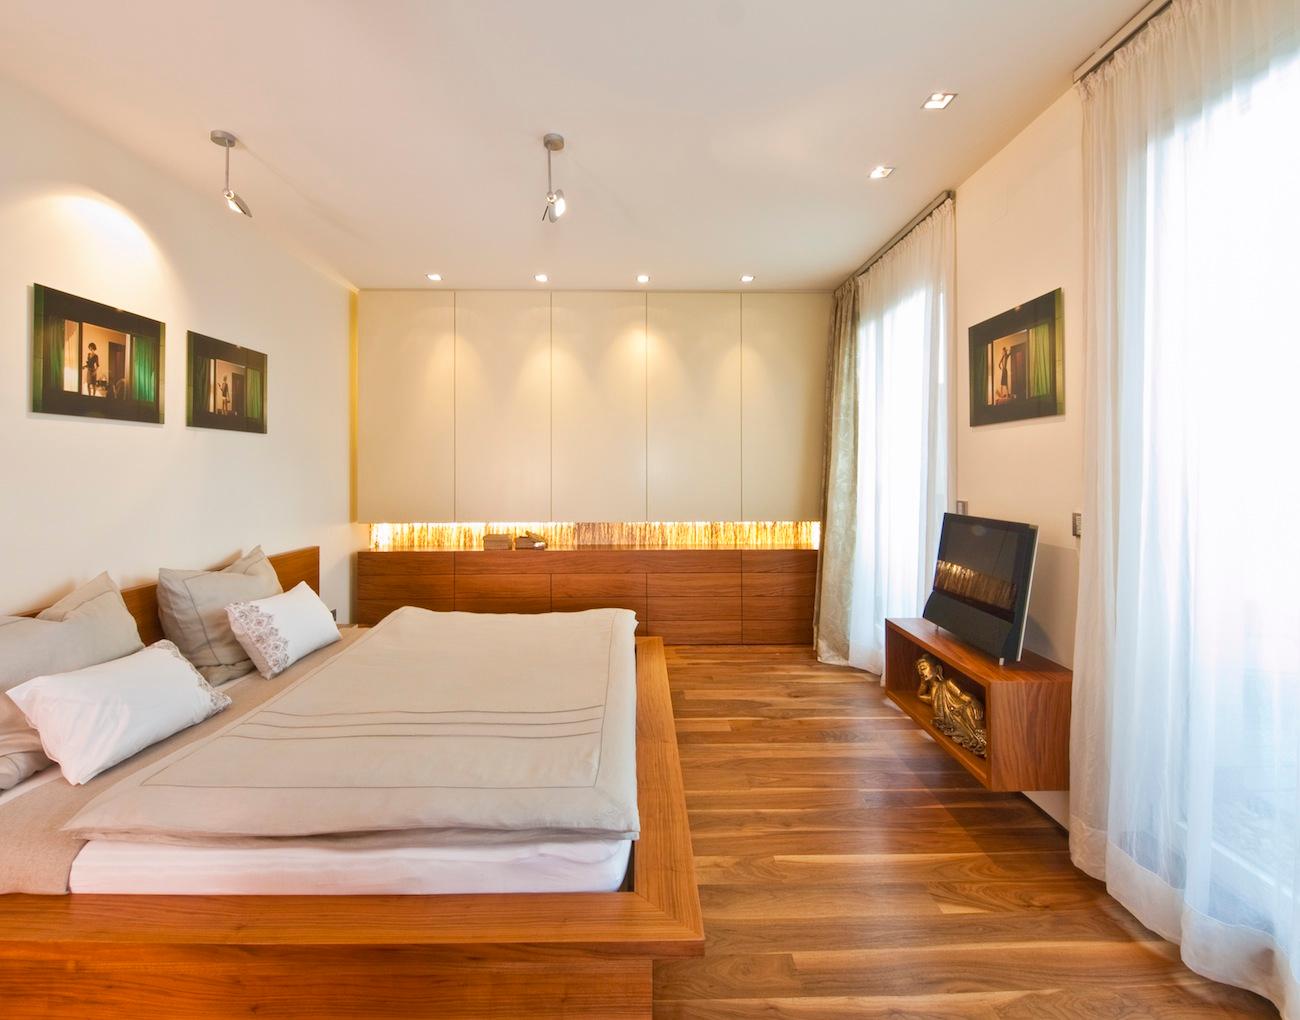 exlusives Schlafzimmer #loft #indirektebeleuchtung #wandbild #naturholz #tvboard ©www.peters-fotodesign.com